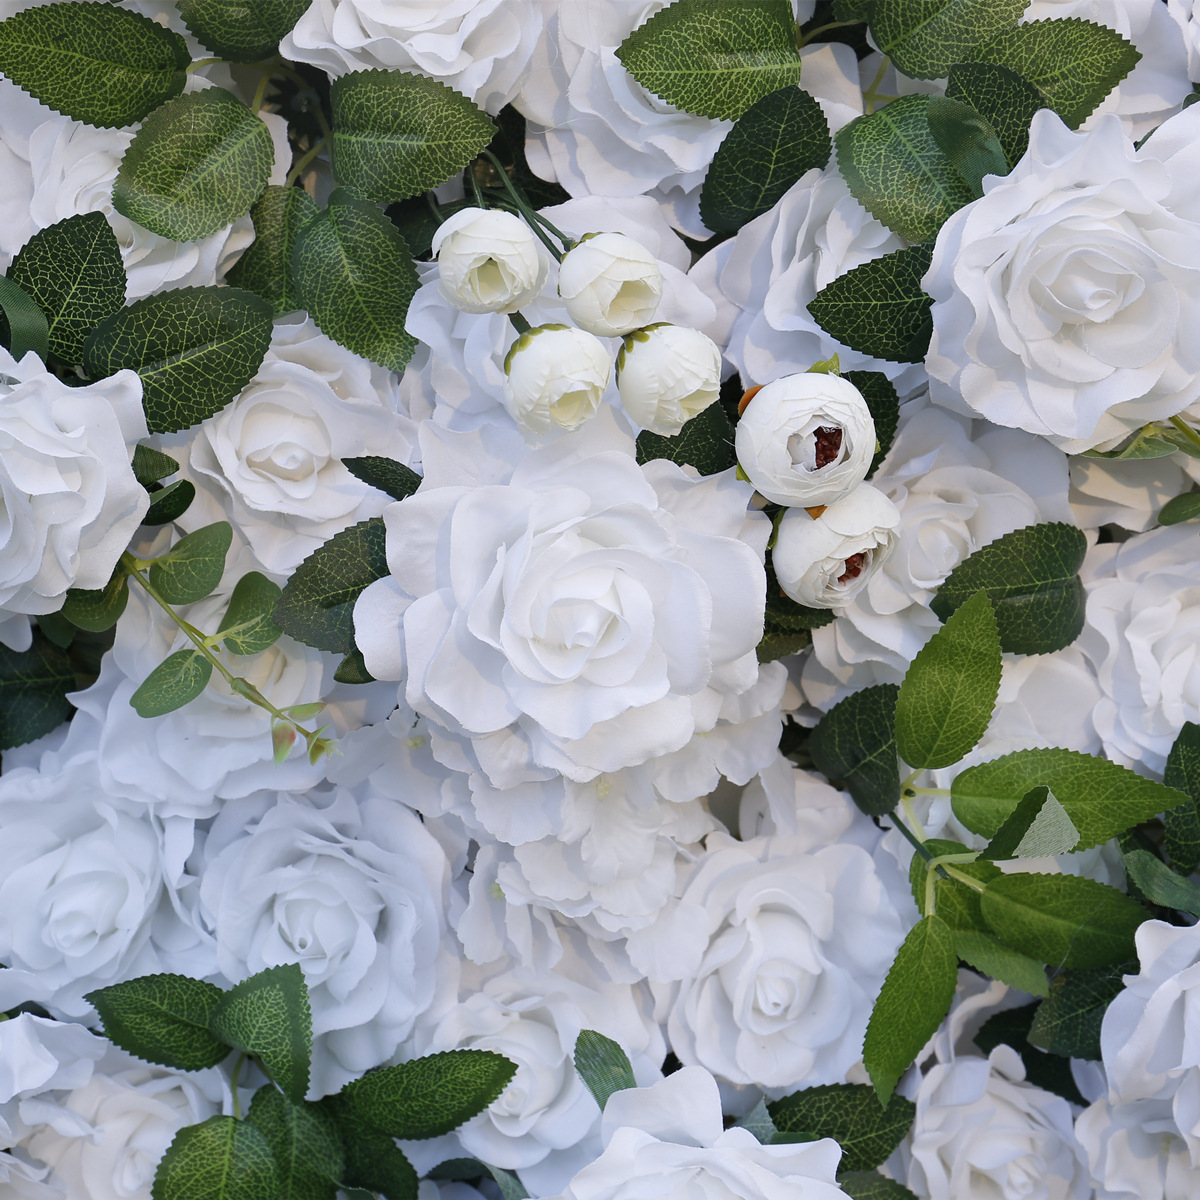 꽃 예술 5D 입체 배경 숲 스타일 웨딩 장식 및 웨딩 장식의 천 배경 시뮬레이션이 있는 흰색 꽃 벽